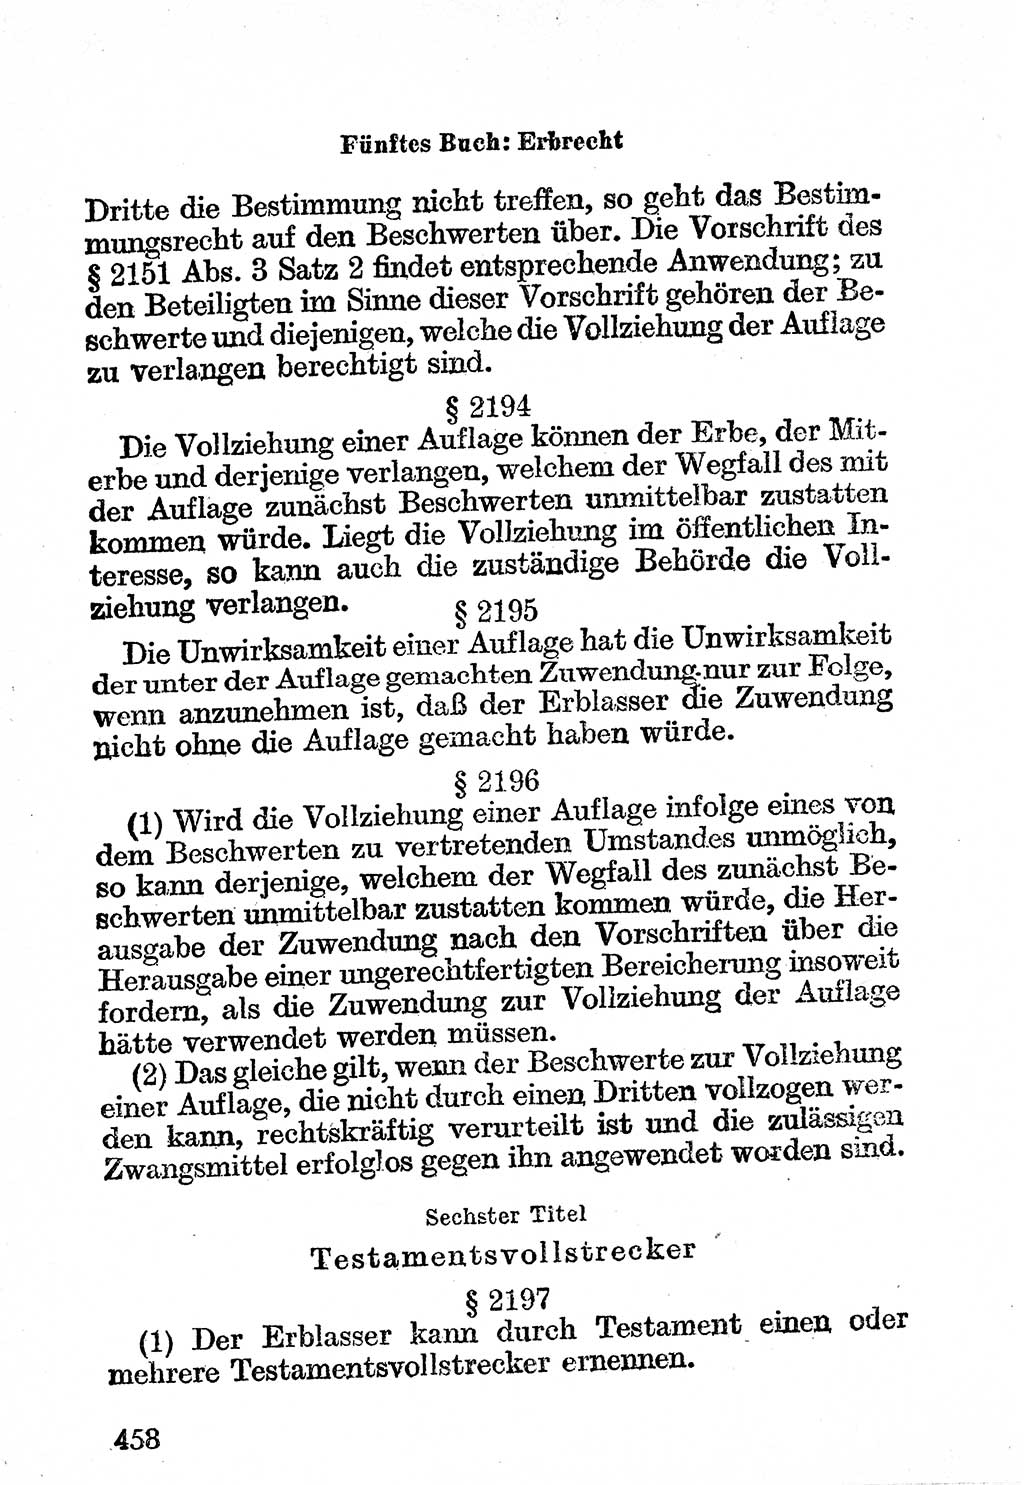 Bürgerliches Gesetzbuch (BGB) nebst wichtigen Nebengesetzen [Deutsche Demokratische Republik (DDR)] 1956, Seite 458 (BGB Nebenges. DDR 1956, S. 458)